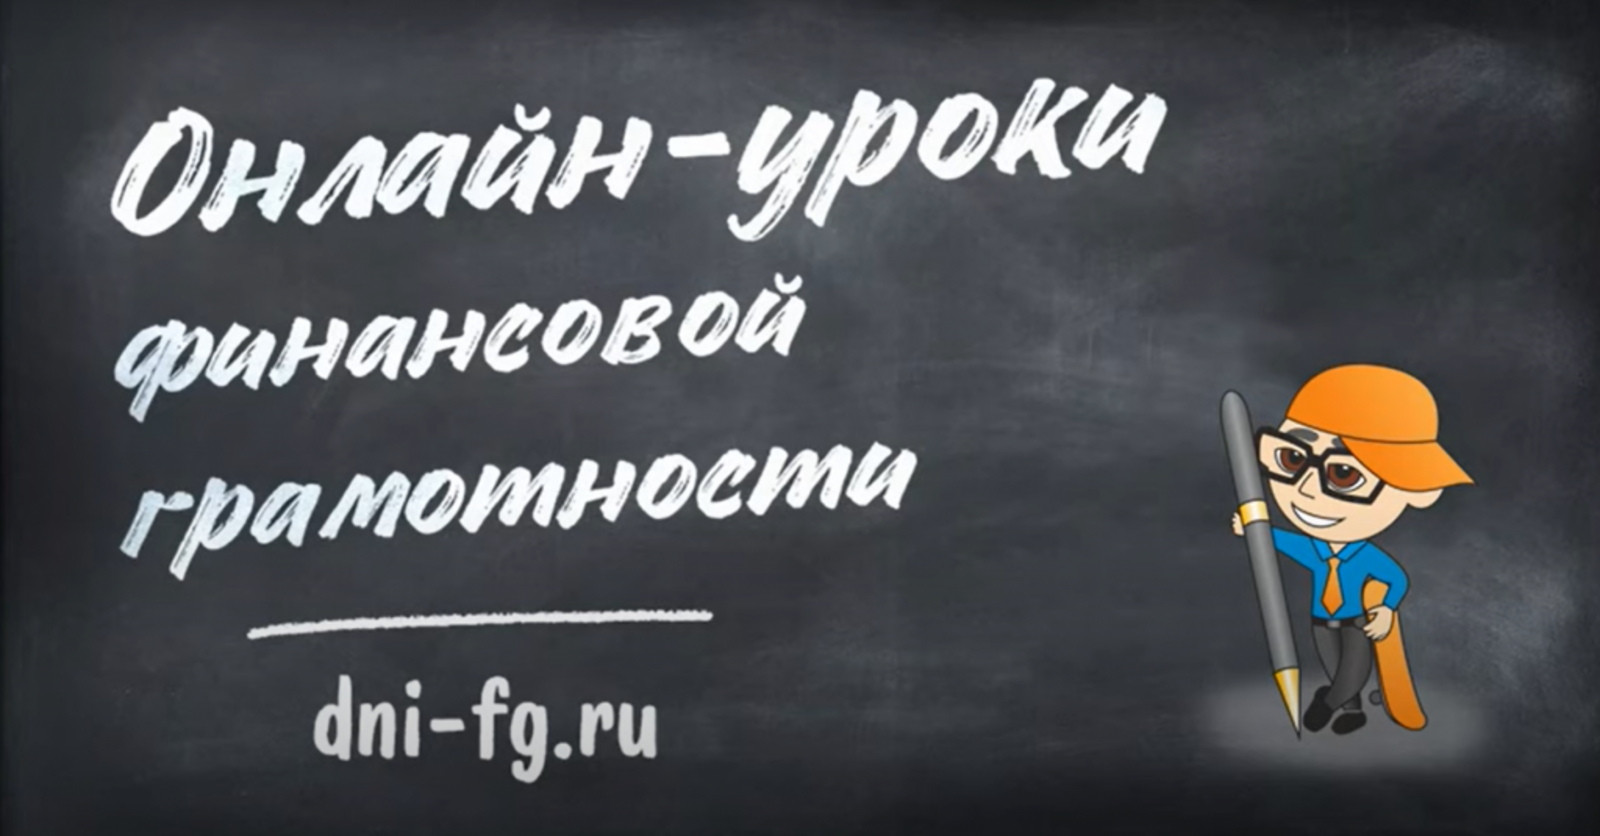 Для школьников и студентов стартуют уроки финансовой грамотности Банка России